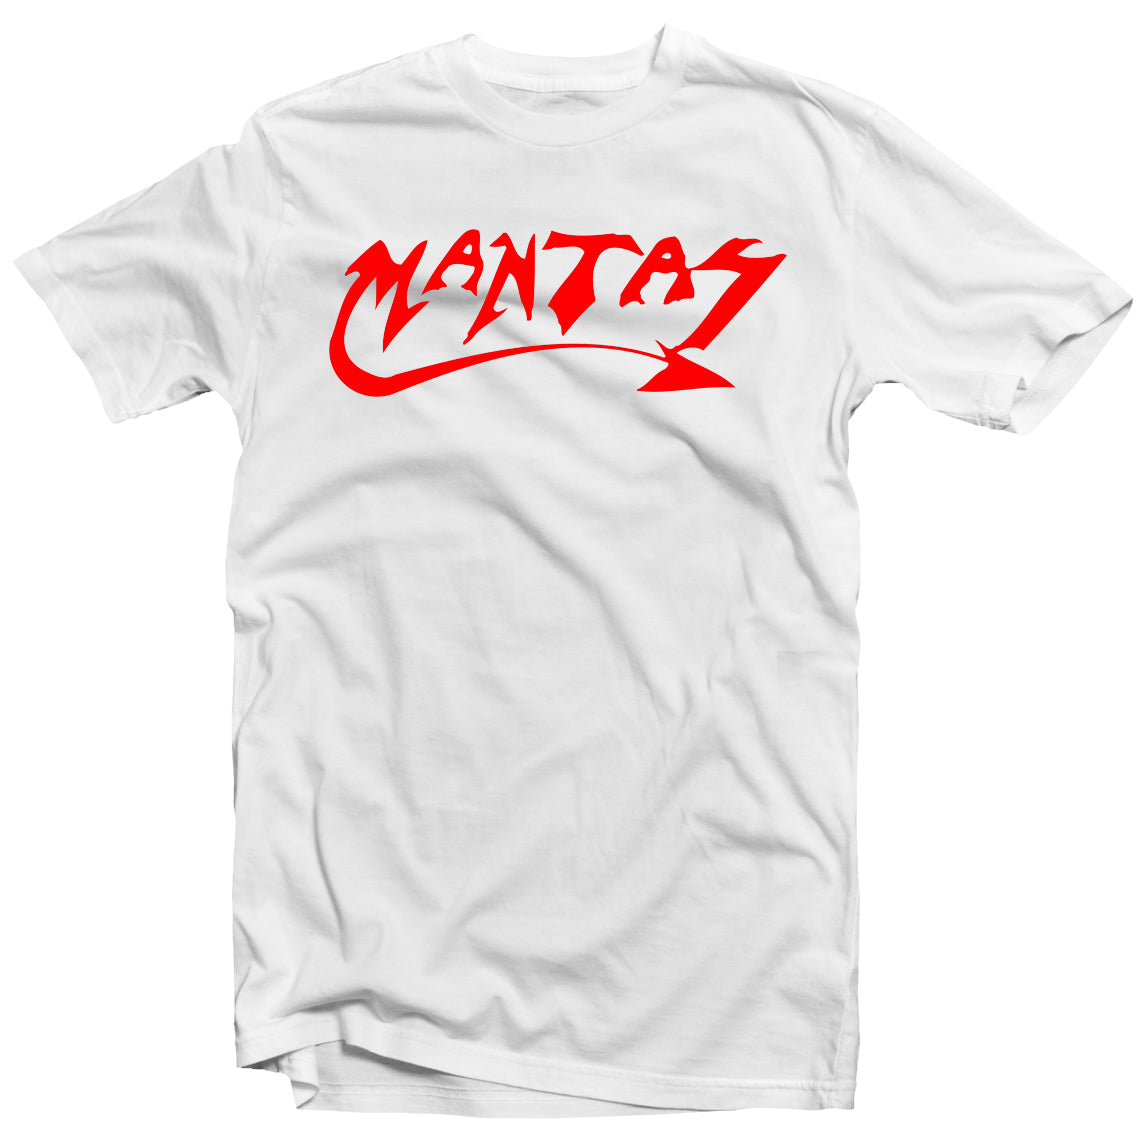 Mantas "Logo (Red on White)" T-Shirt